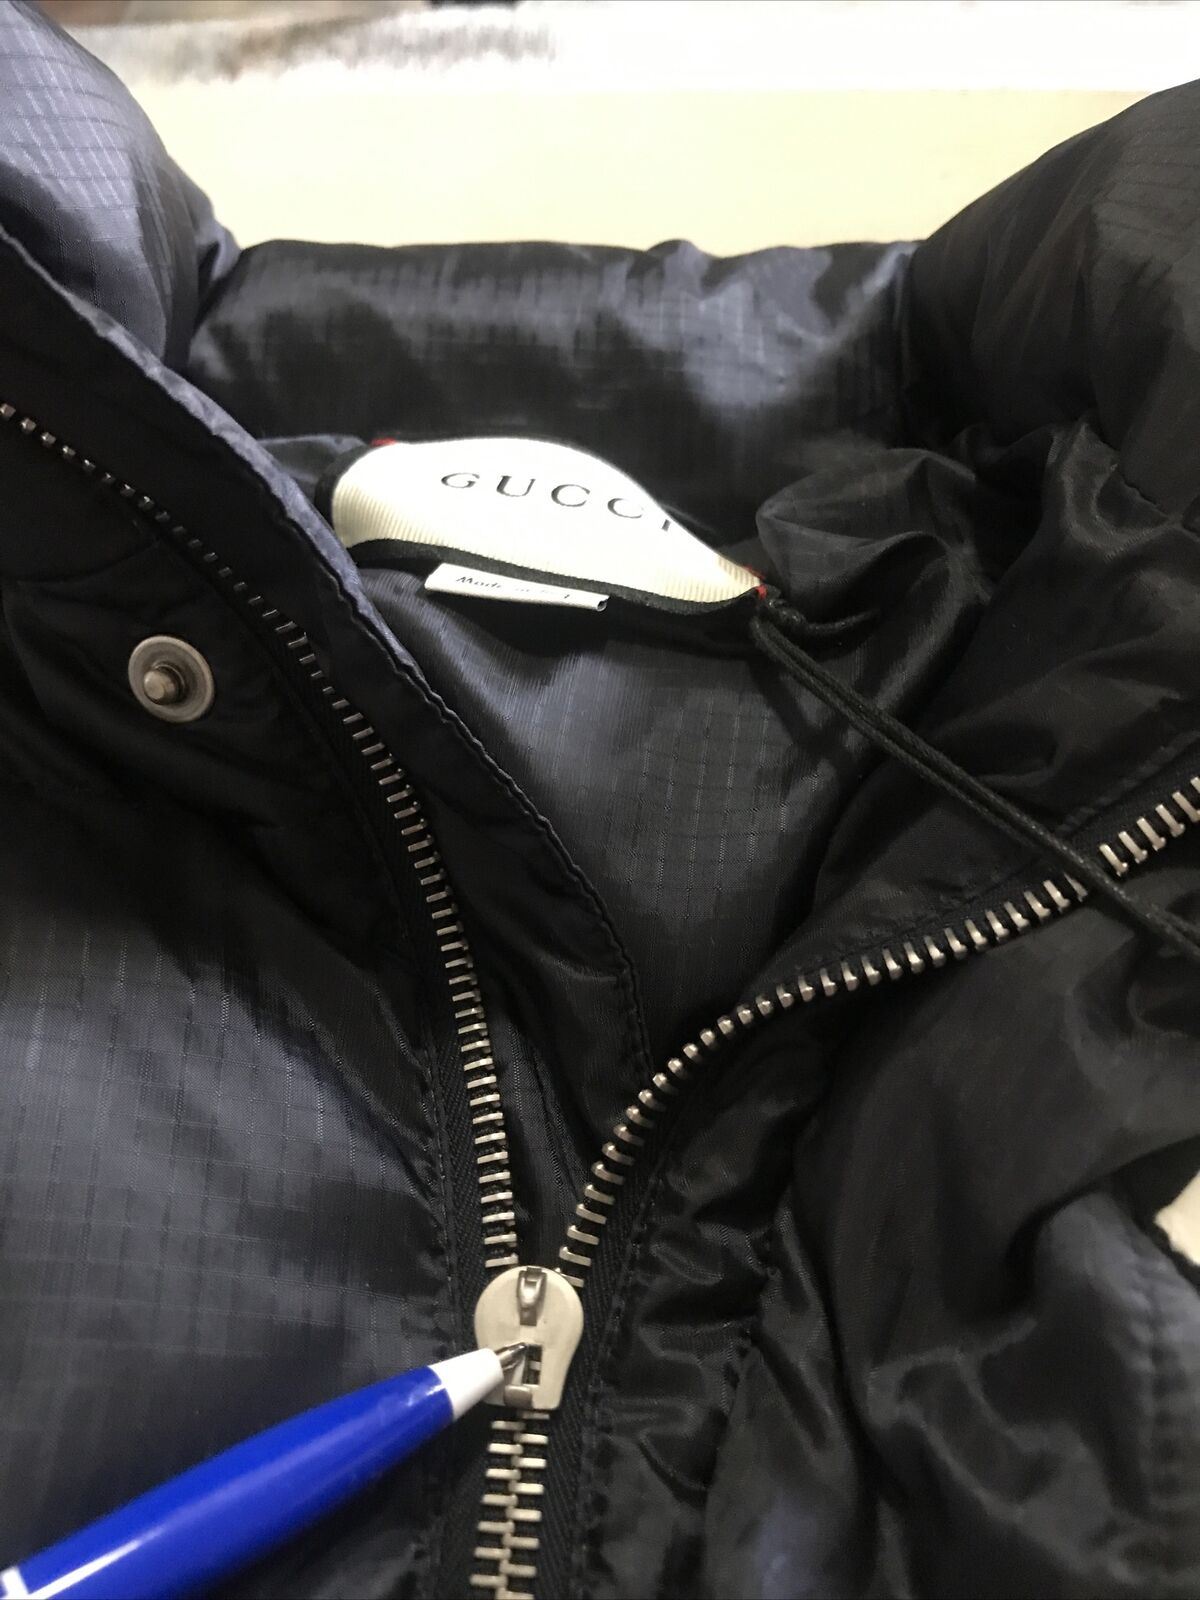 New 2400 Gucci Men Puffer Jacket Coat Black Size L ( 50 Eu ) Italy